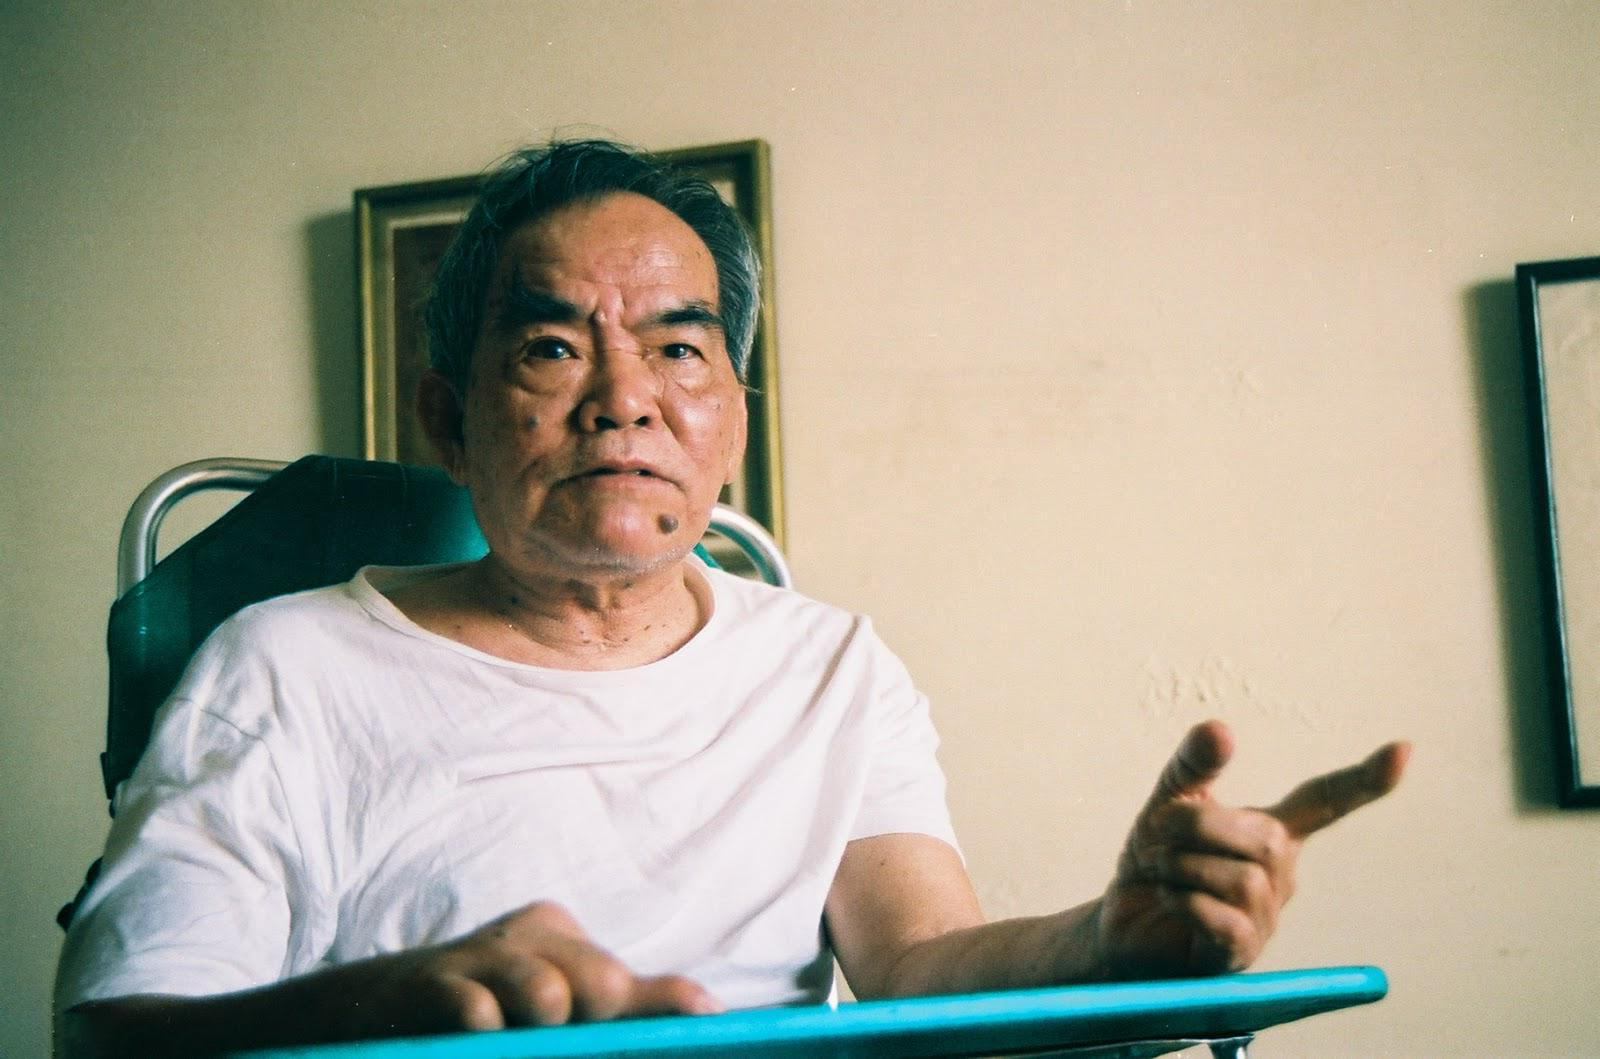 Nhà văn Hoàng Phủ Ngọc Tường - tác giả 'Ai đã đặt tên cho dòng sông' qua đời sau 1 tháng vợ mất - ảnh 3